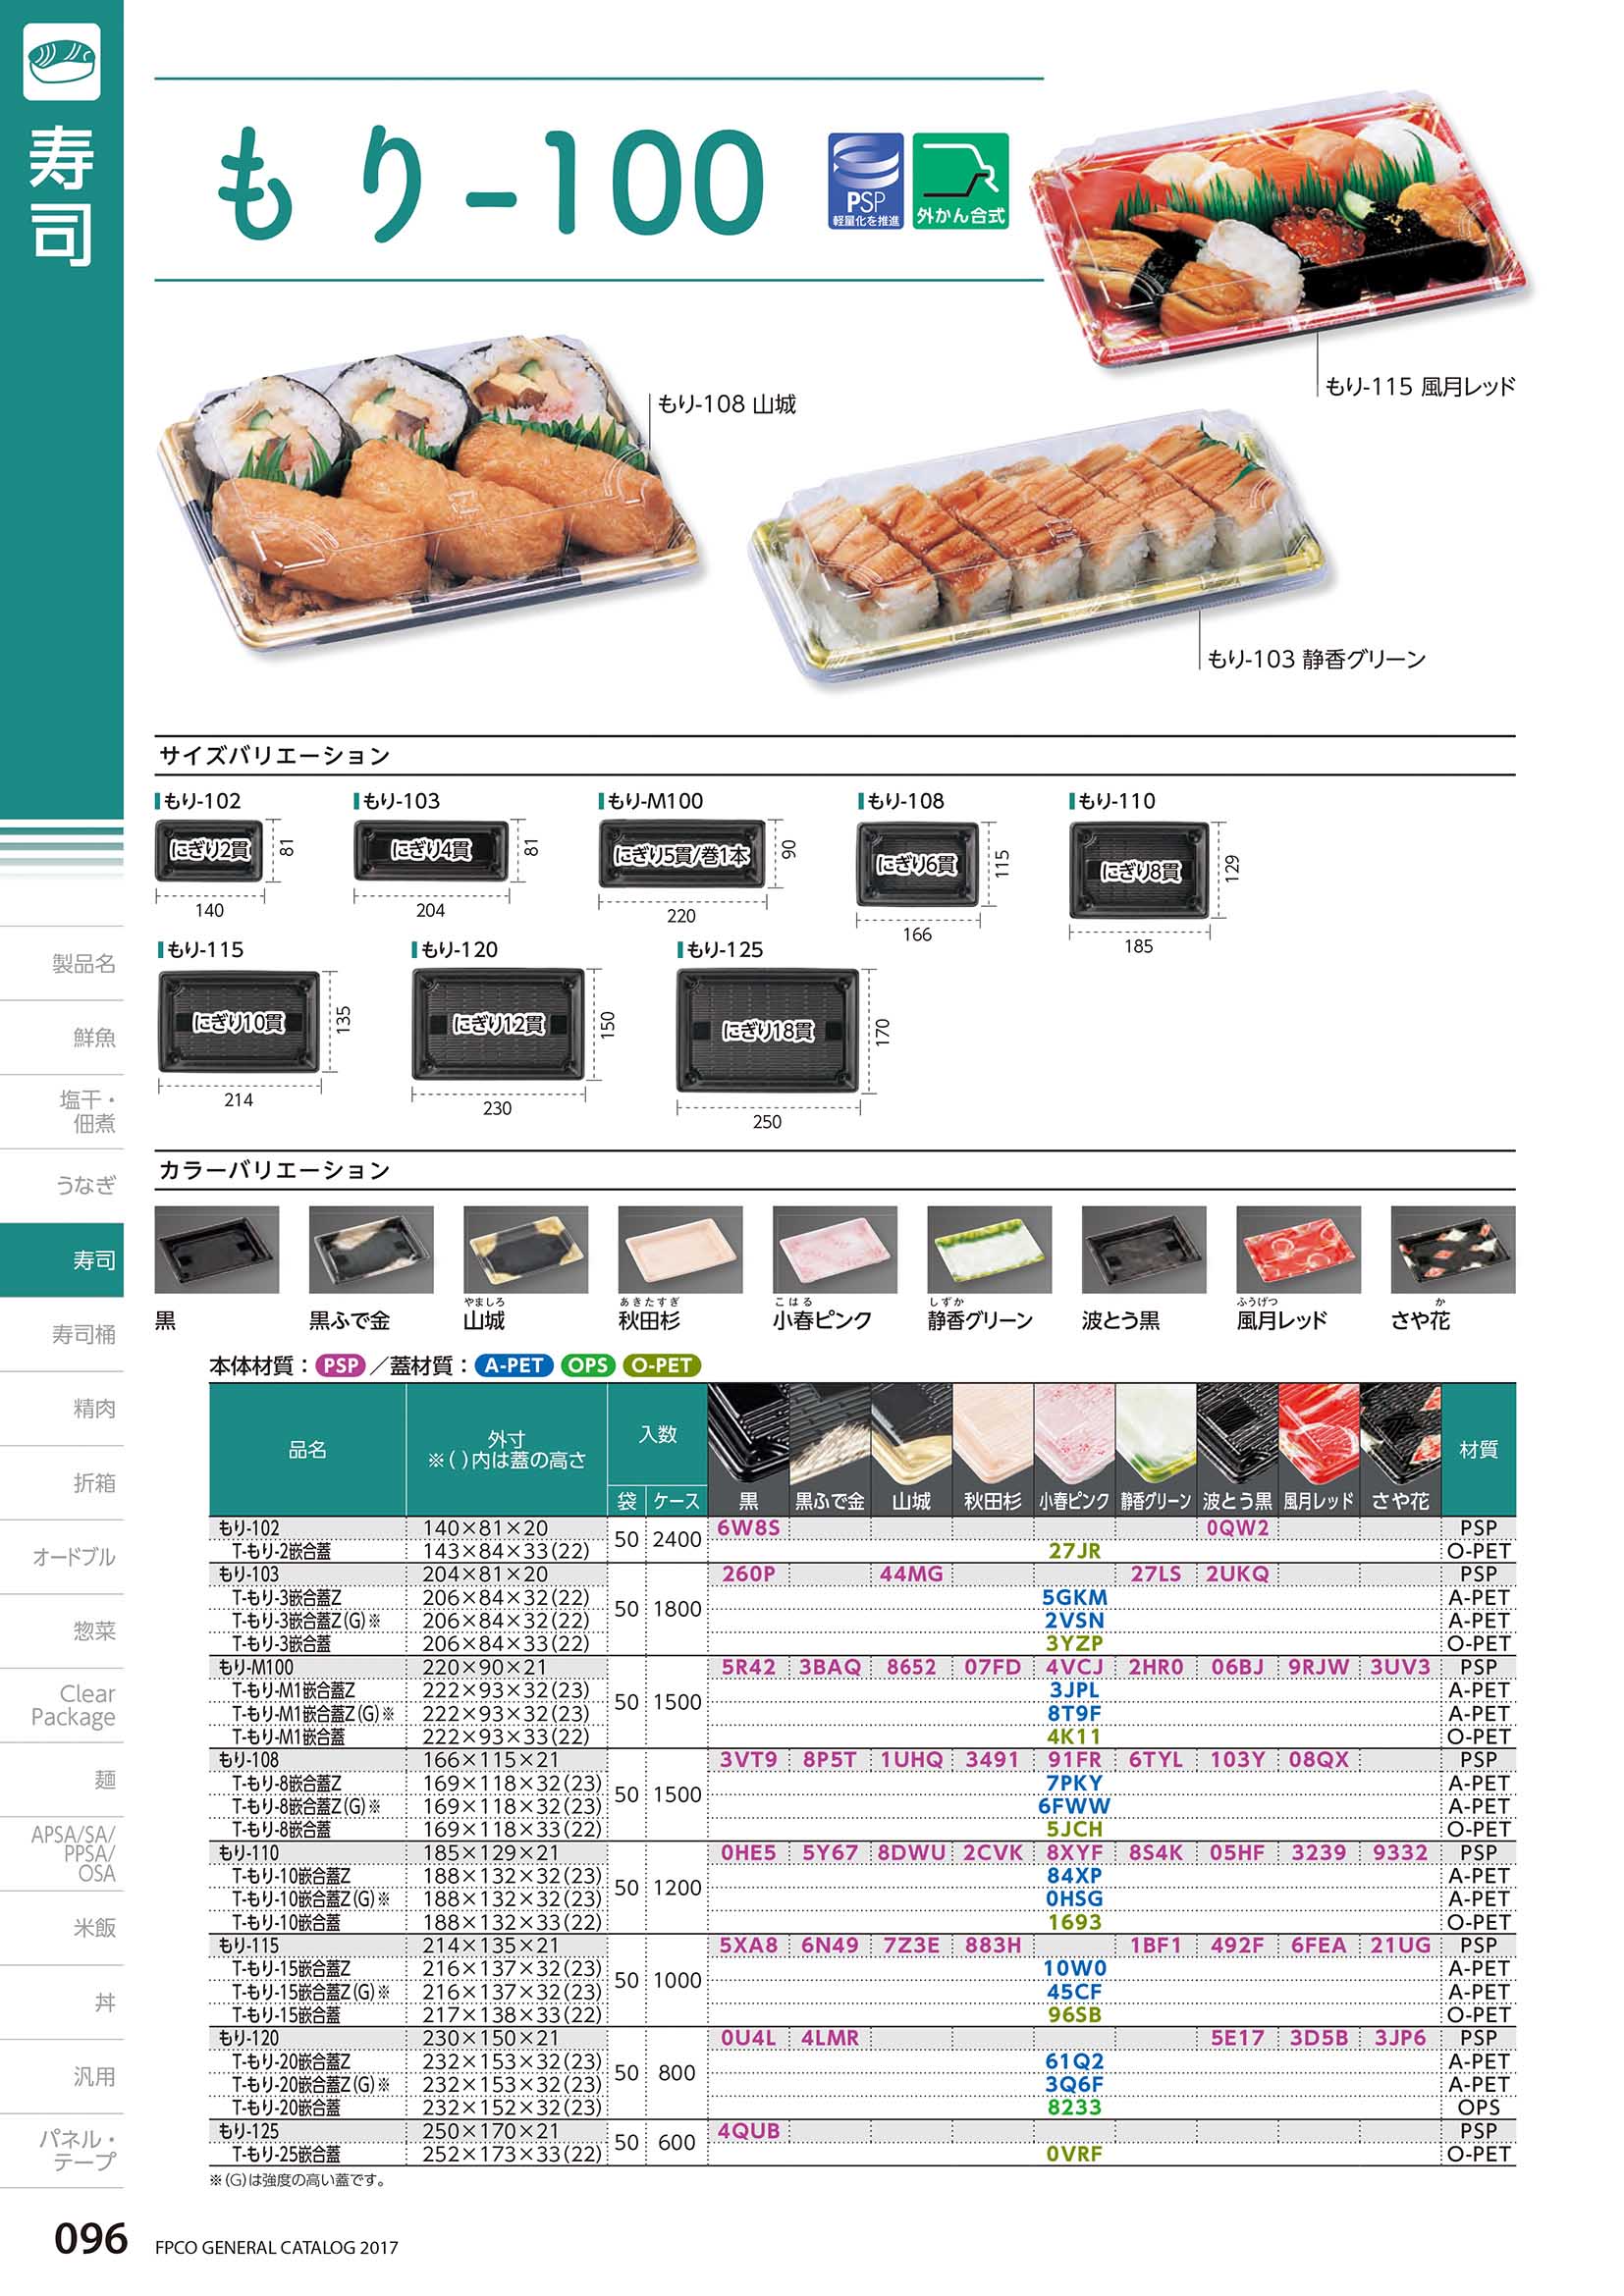 黒ふで金 もり-半月1.5 V 本体 魚 寿司 寿司容器 00363471 エフピコ にぎり 鮮魚